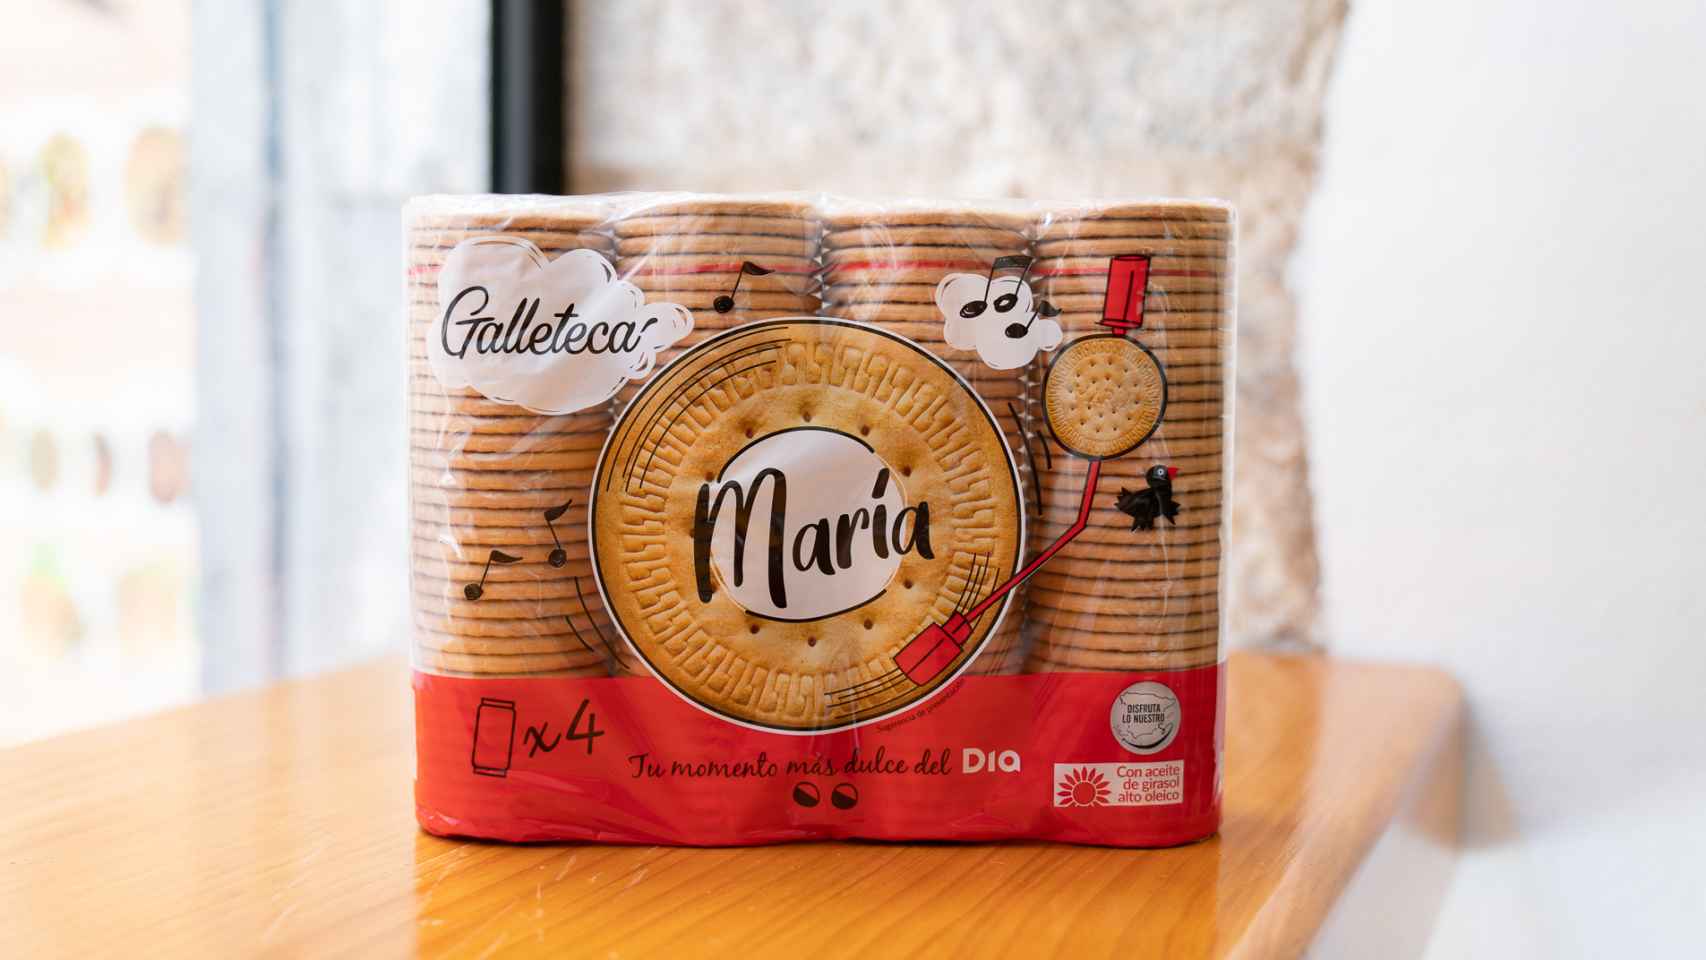 El paquete de galletas María de Dia.